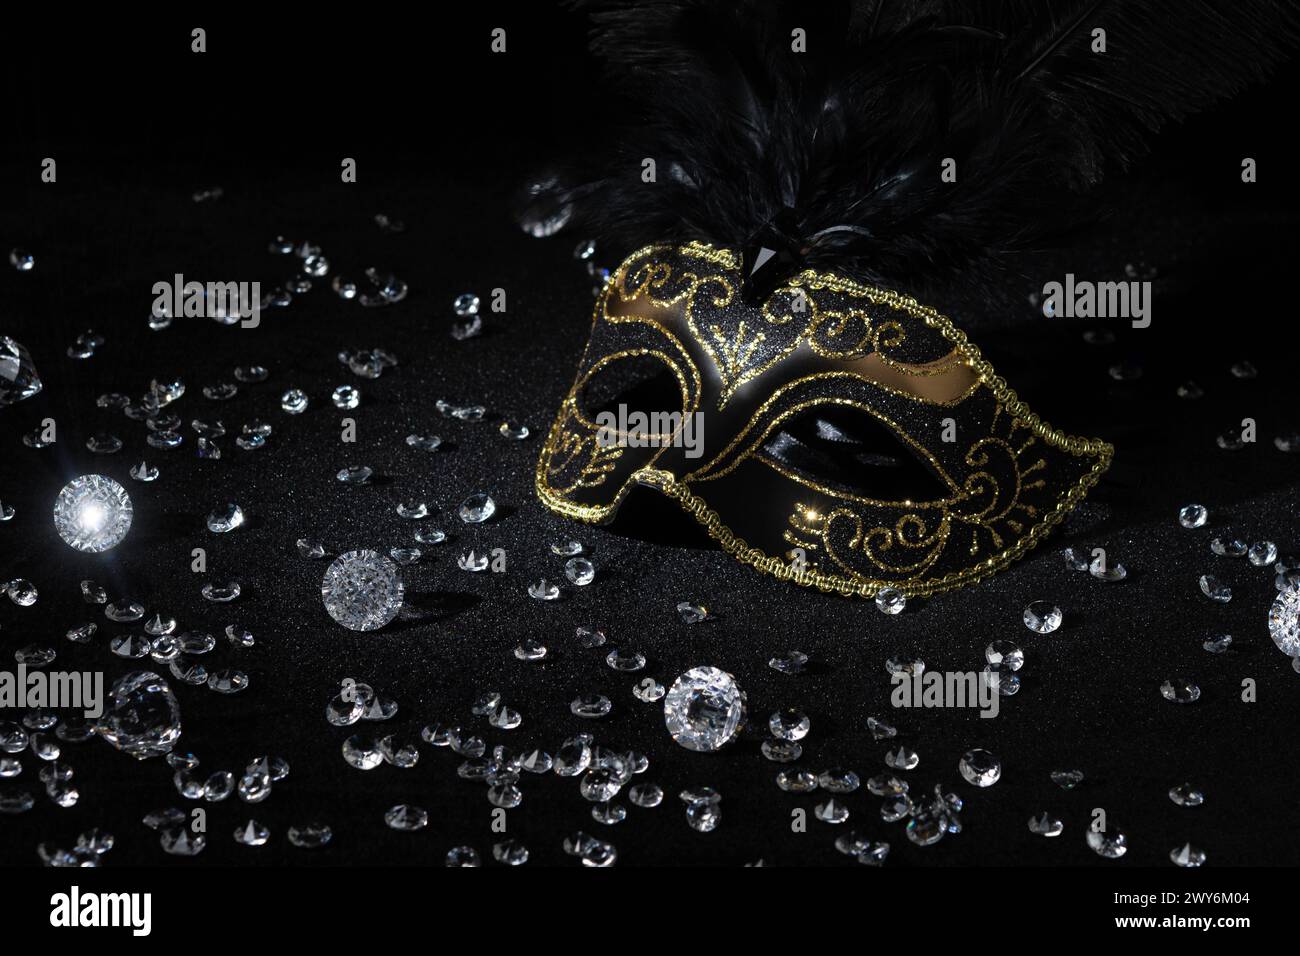 Masque d'or masqué avec des pierres précieuses sur fond noir. Banque D'Images